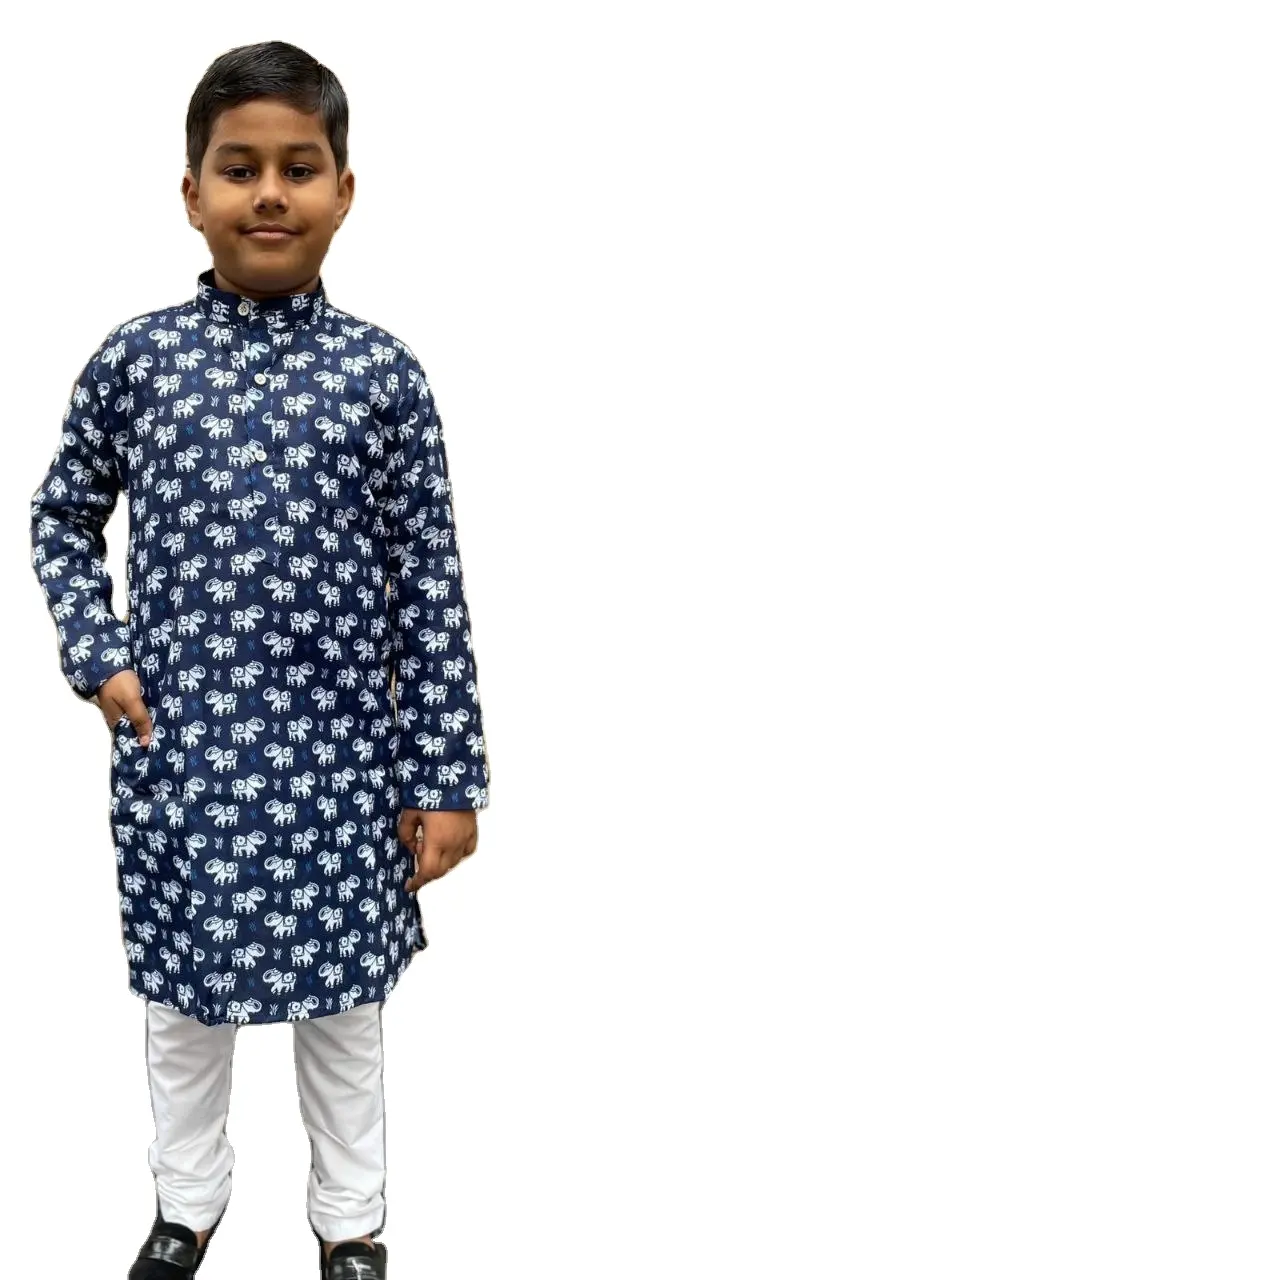 नियमित और कभी-कभार पहनें डिज़ाइनर लड़कों के लिए कॉटन कुर्ता पायजामा ड्रेस श्री भारतीय निर्यात उपहार बचपन के संग्रह